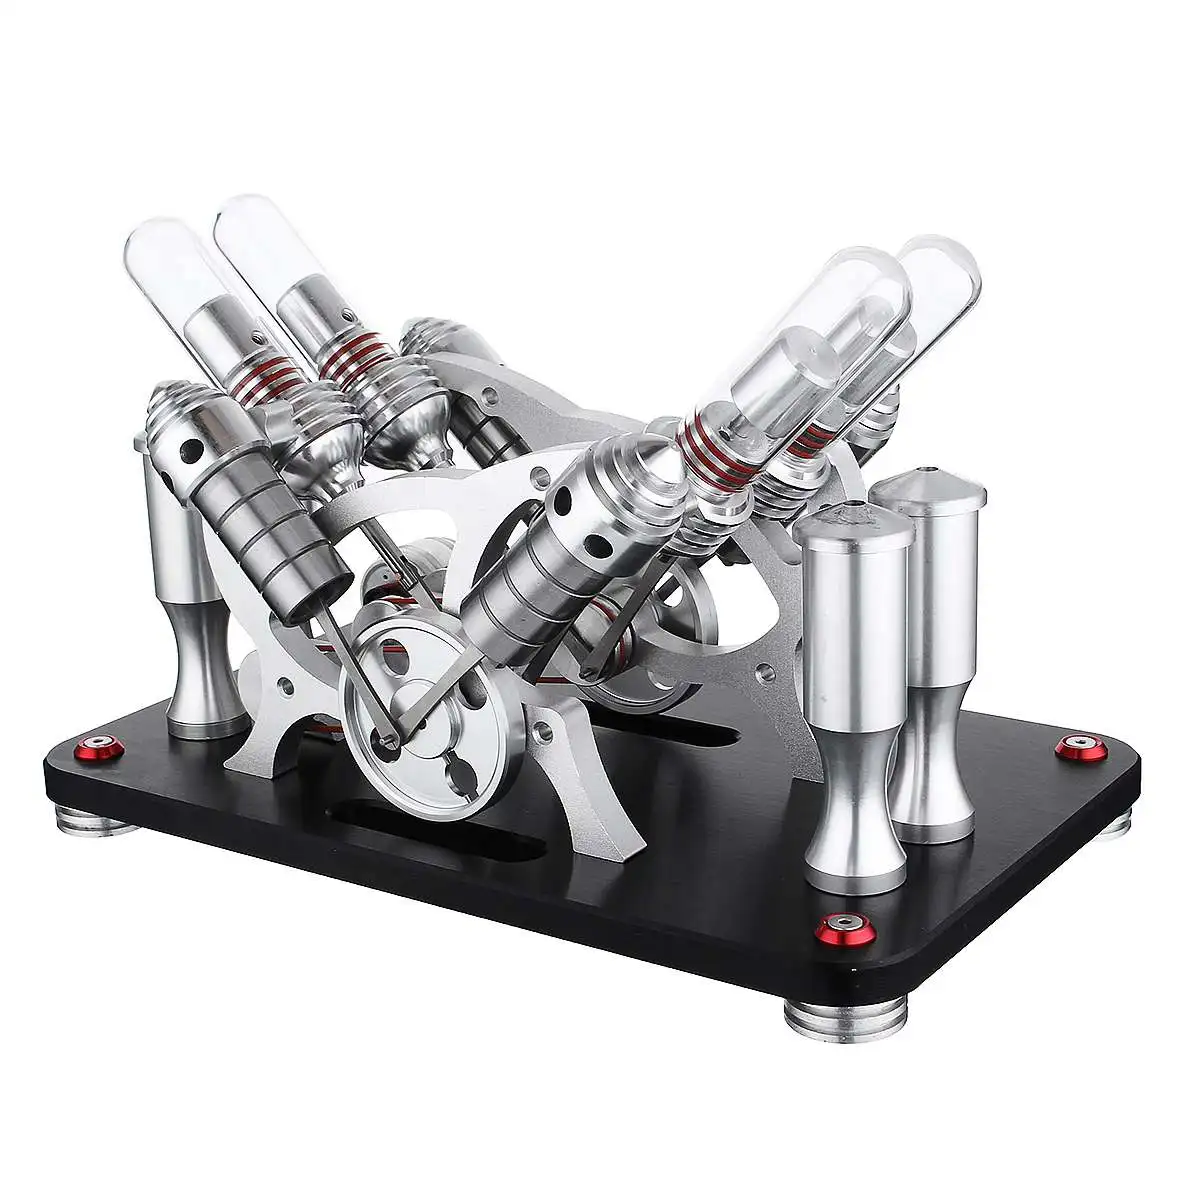 SH-02 модель двигателя Стирлинга, Развивающие игрушки, развивающие игрушки, подарочные наборы для детей